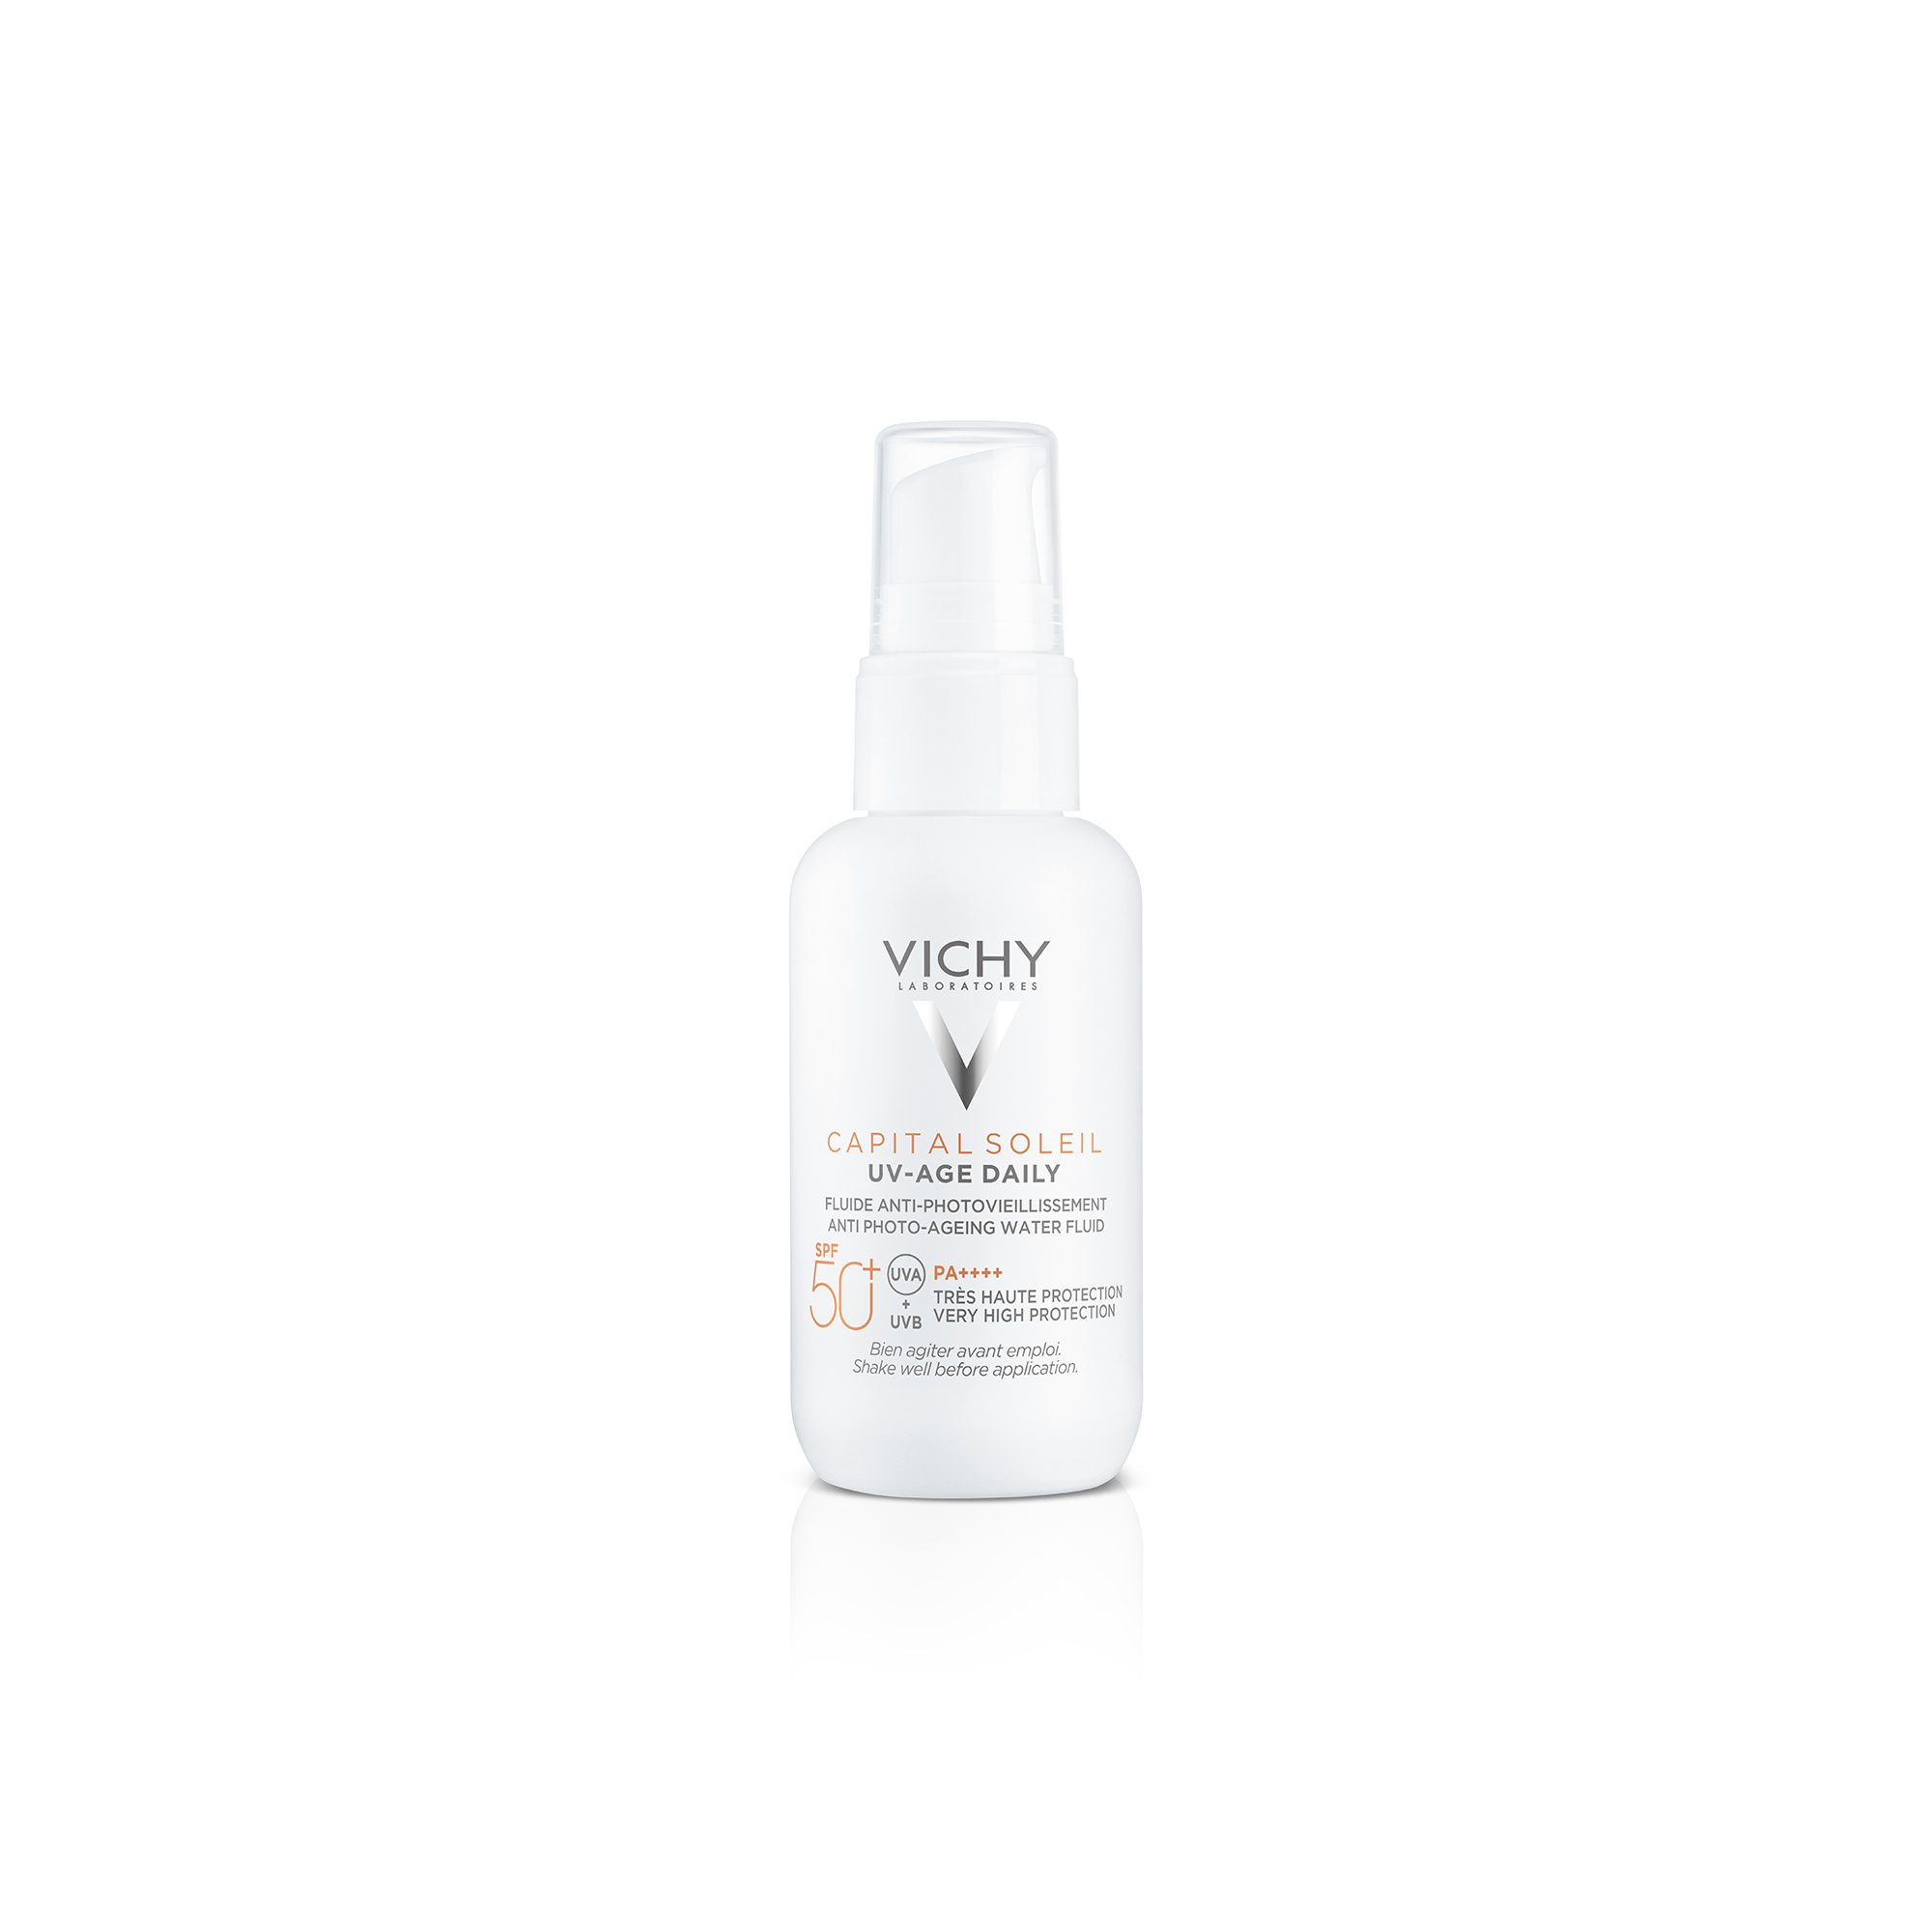 Vichy Capital Soleil UV-Age fluid SPF50+